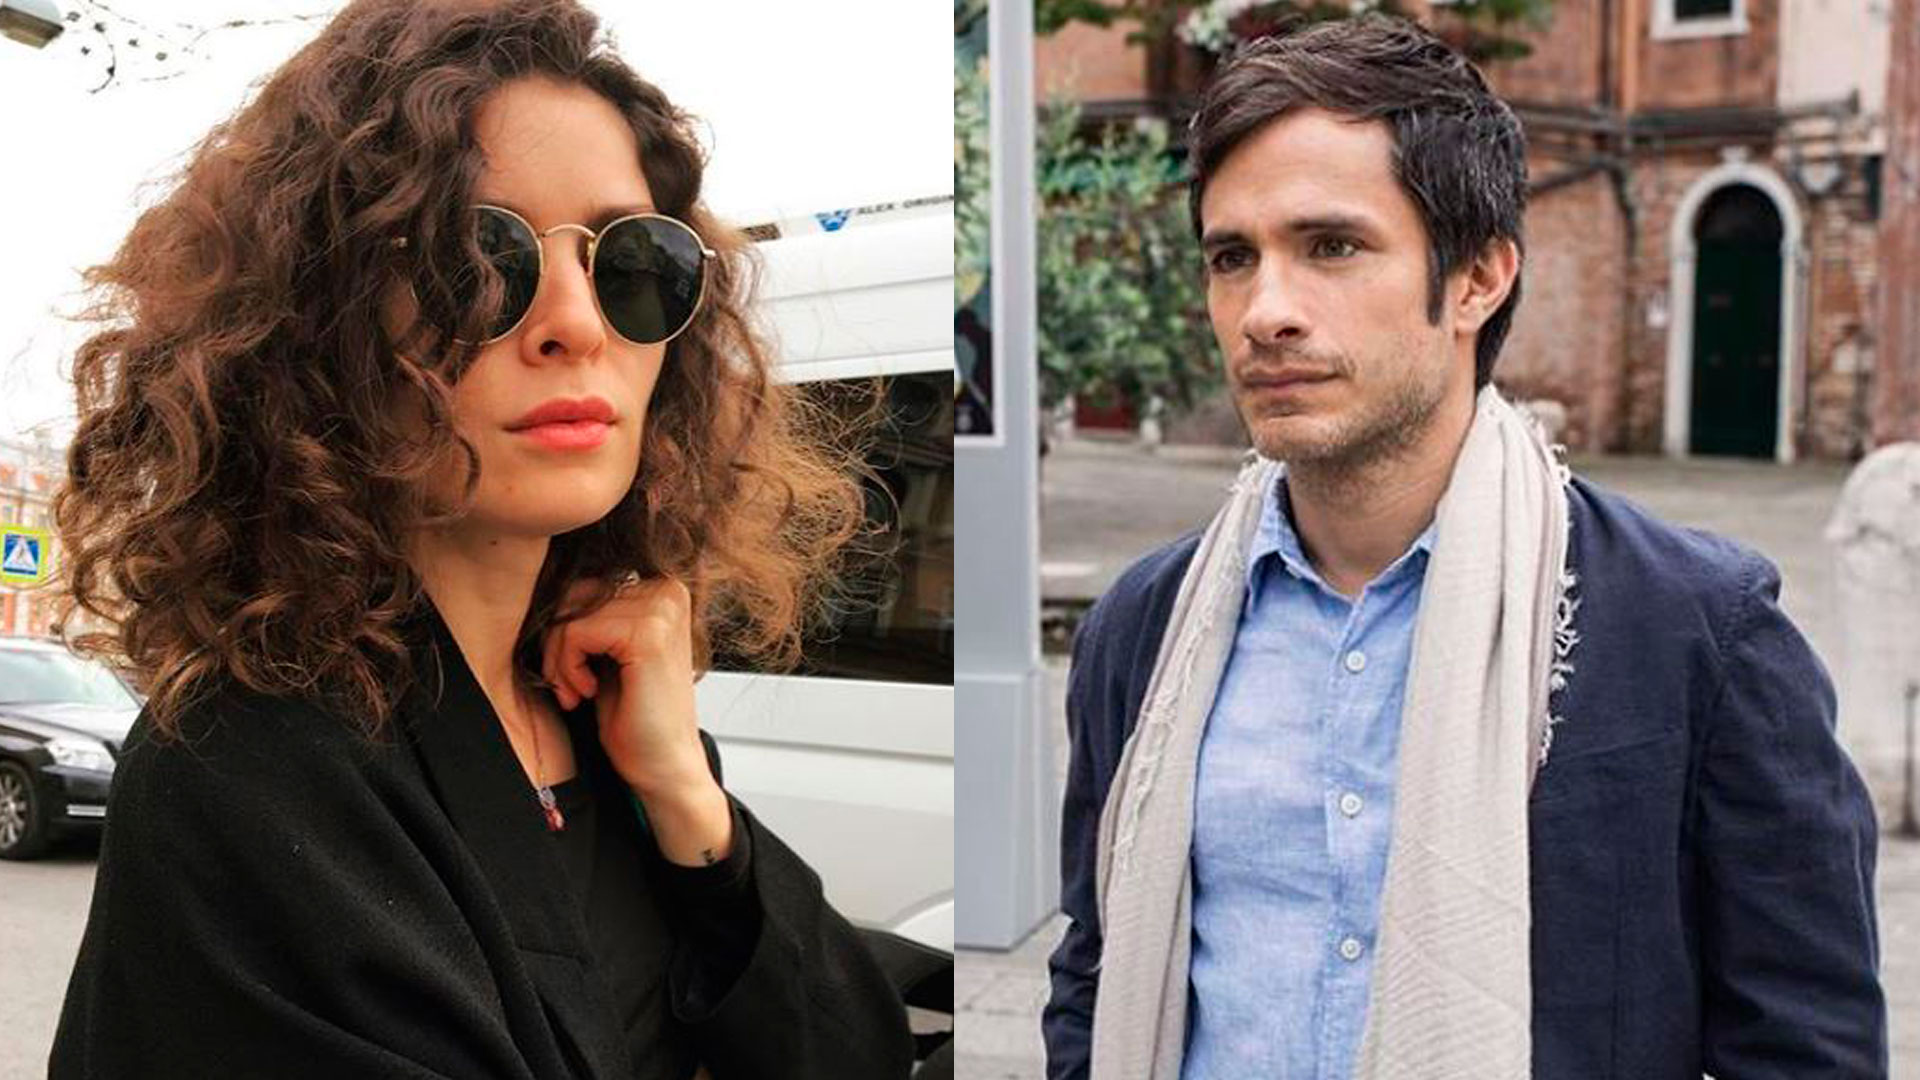 Gael García tendría un nuevo romance con Fernanda Aragonés
(Foto: Instagram feraragones/mitjamazon)